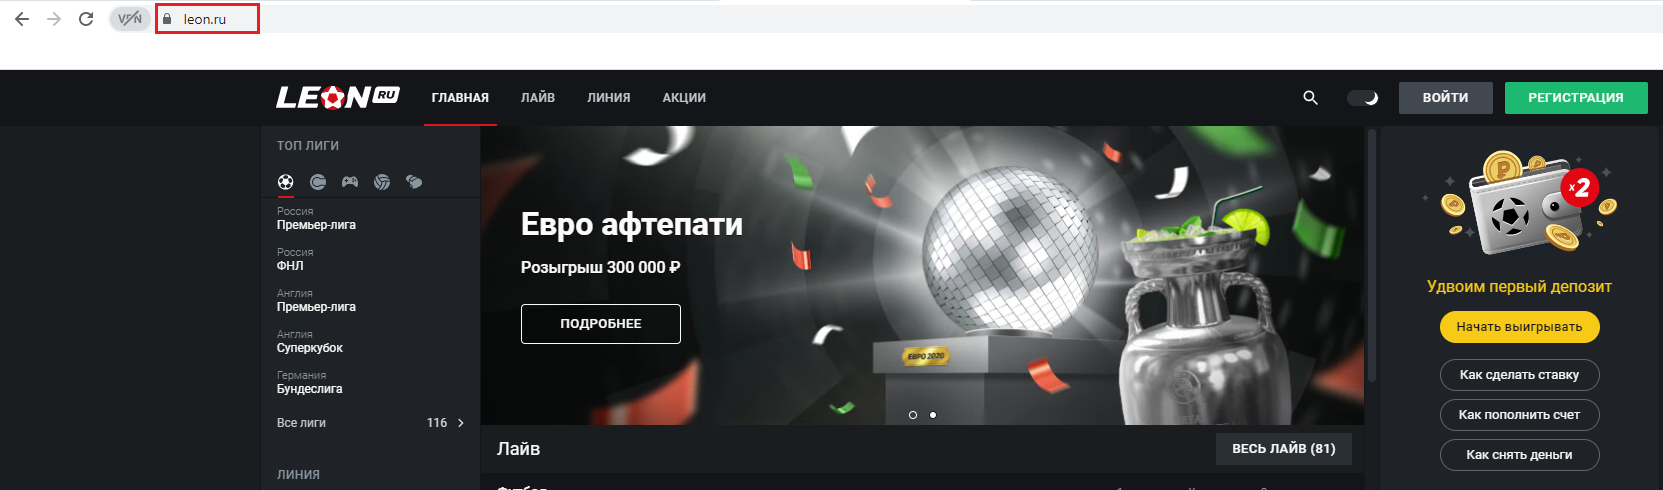 Сайт легального в России букмекера «Леон» в доменной зоне .ru